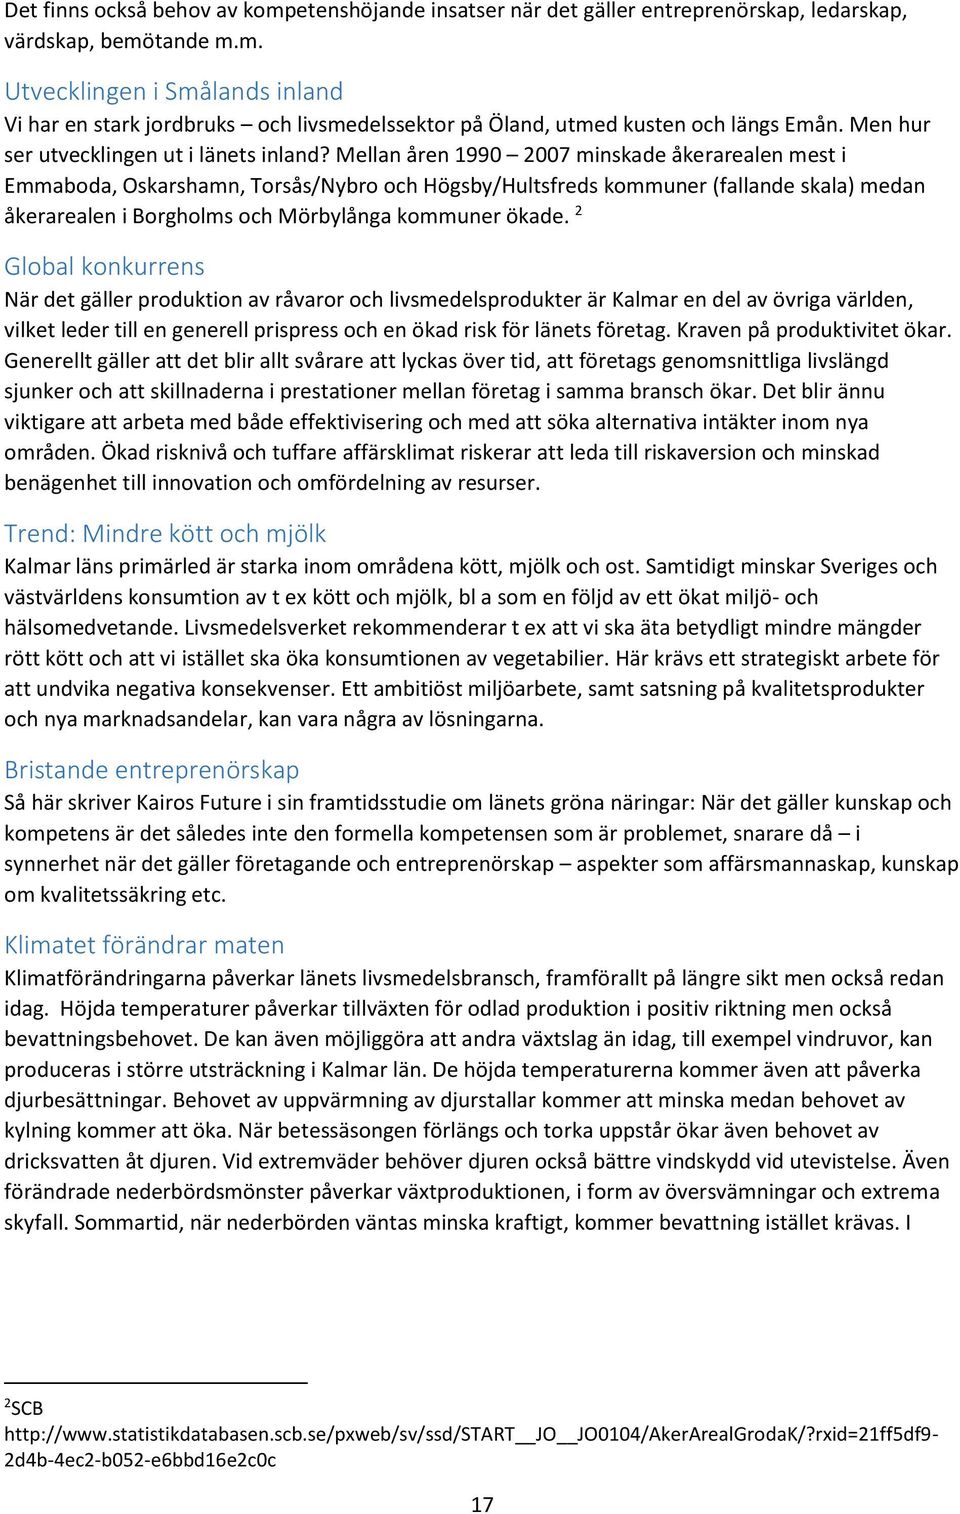 Mellan åren 1990 2007 minskade åkerarealen mest i Emmaboda, Oskarshamn, Torsås/Nybro och Högsby/Hultsfreds kommuner (fallande skala) medan åkerarealen i Borgholms och Mörbylånga kommuner ökade.